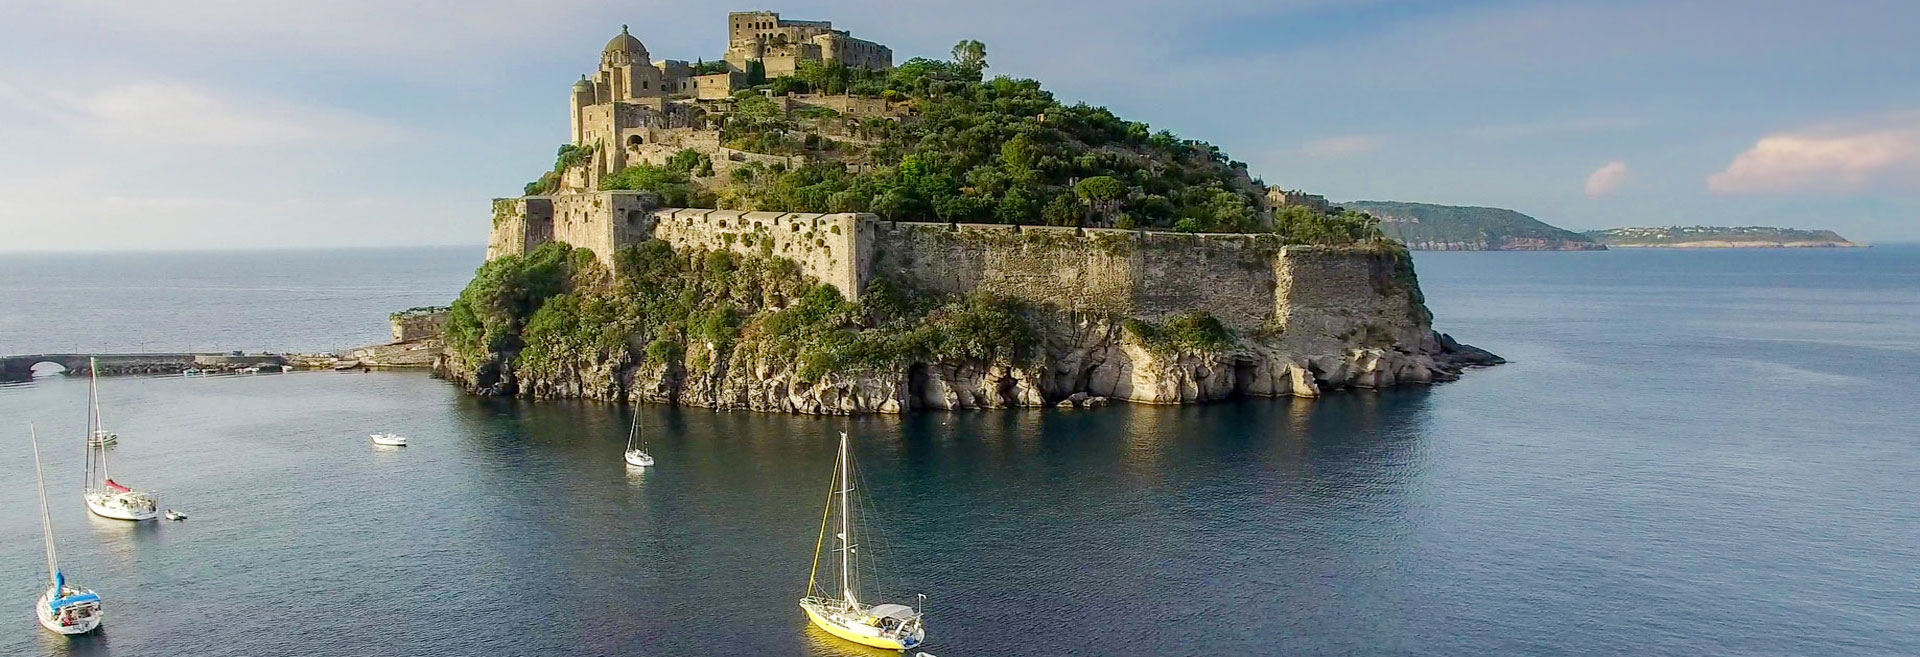 Das Castello Aragonese vor der Insel Ischia